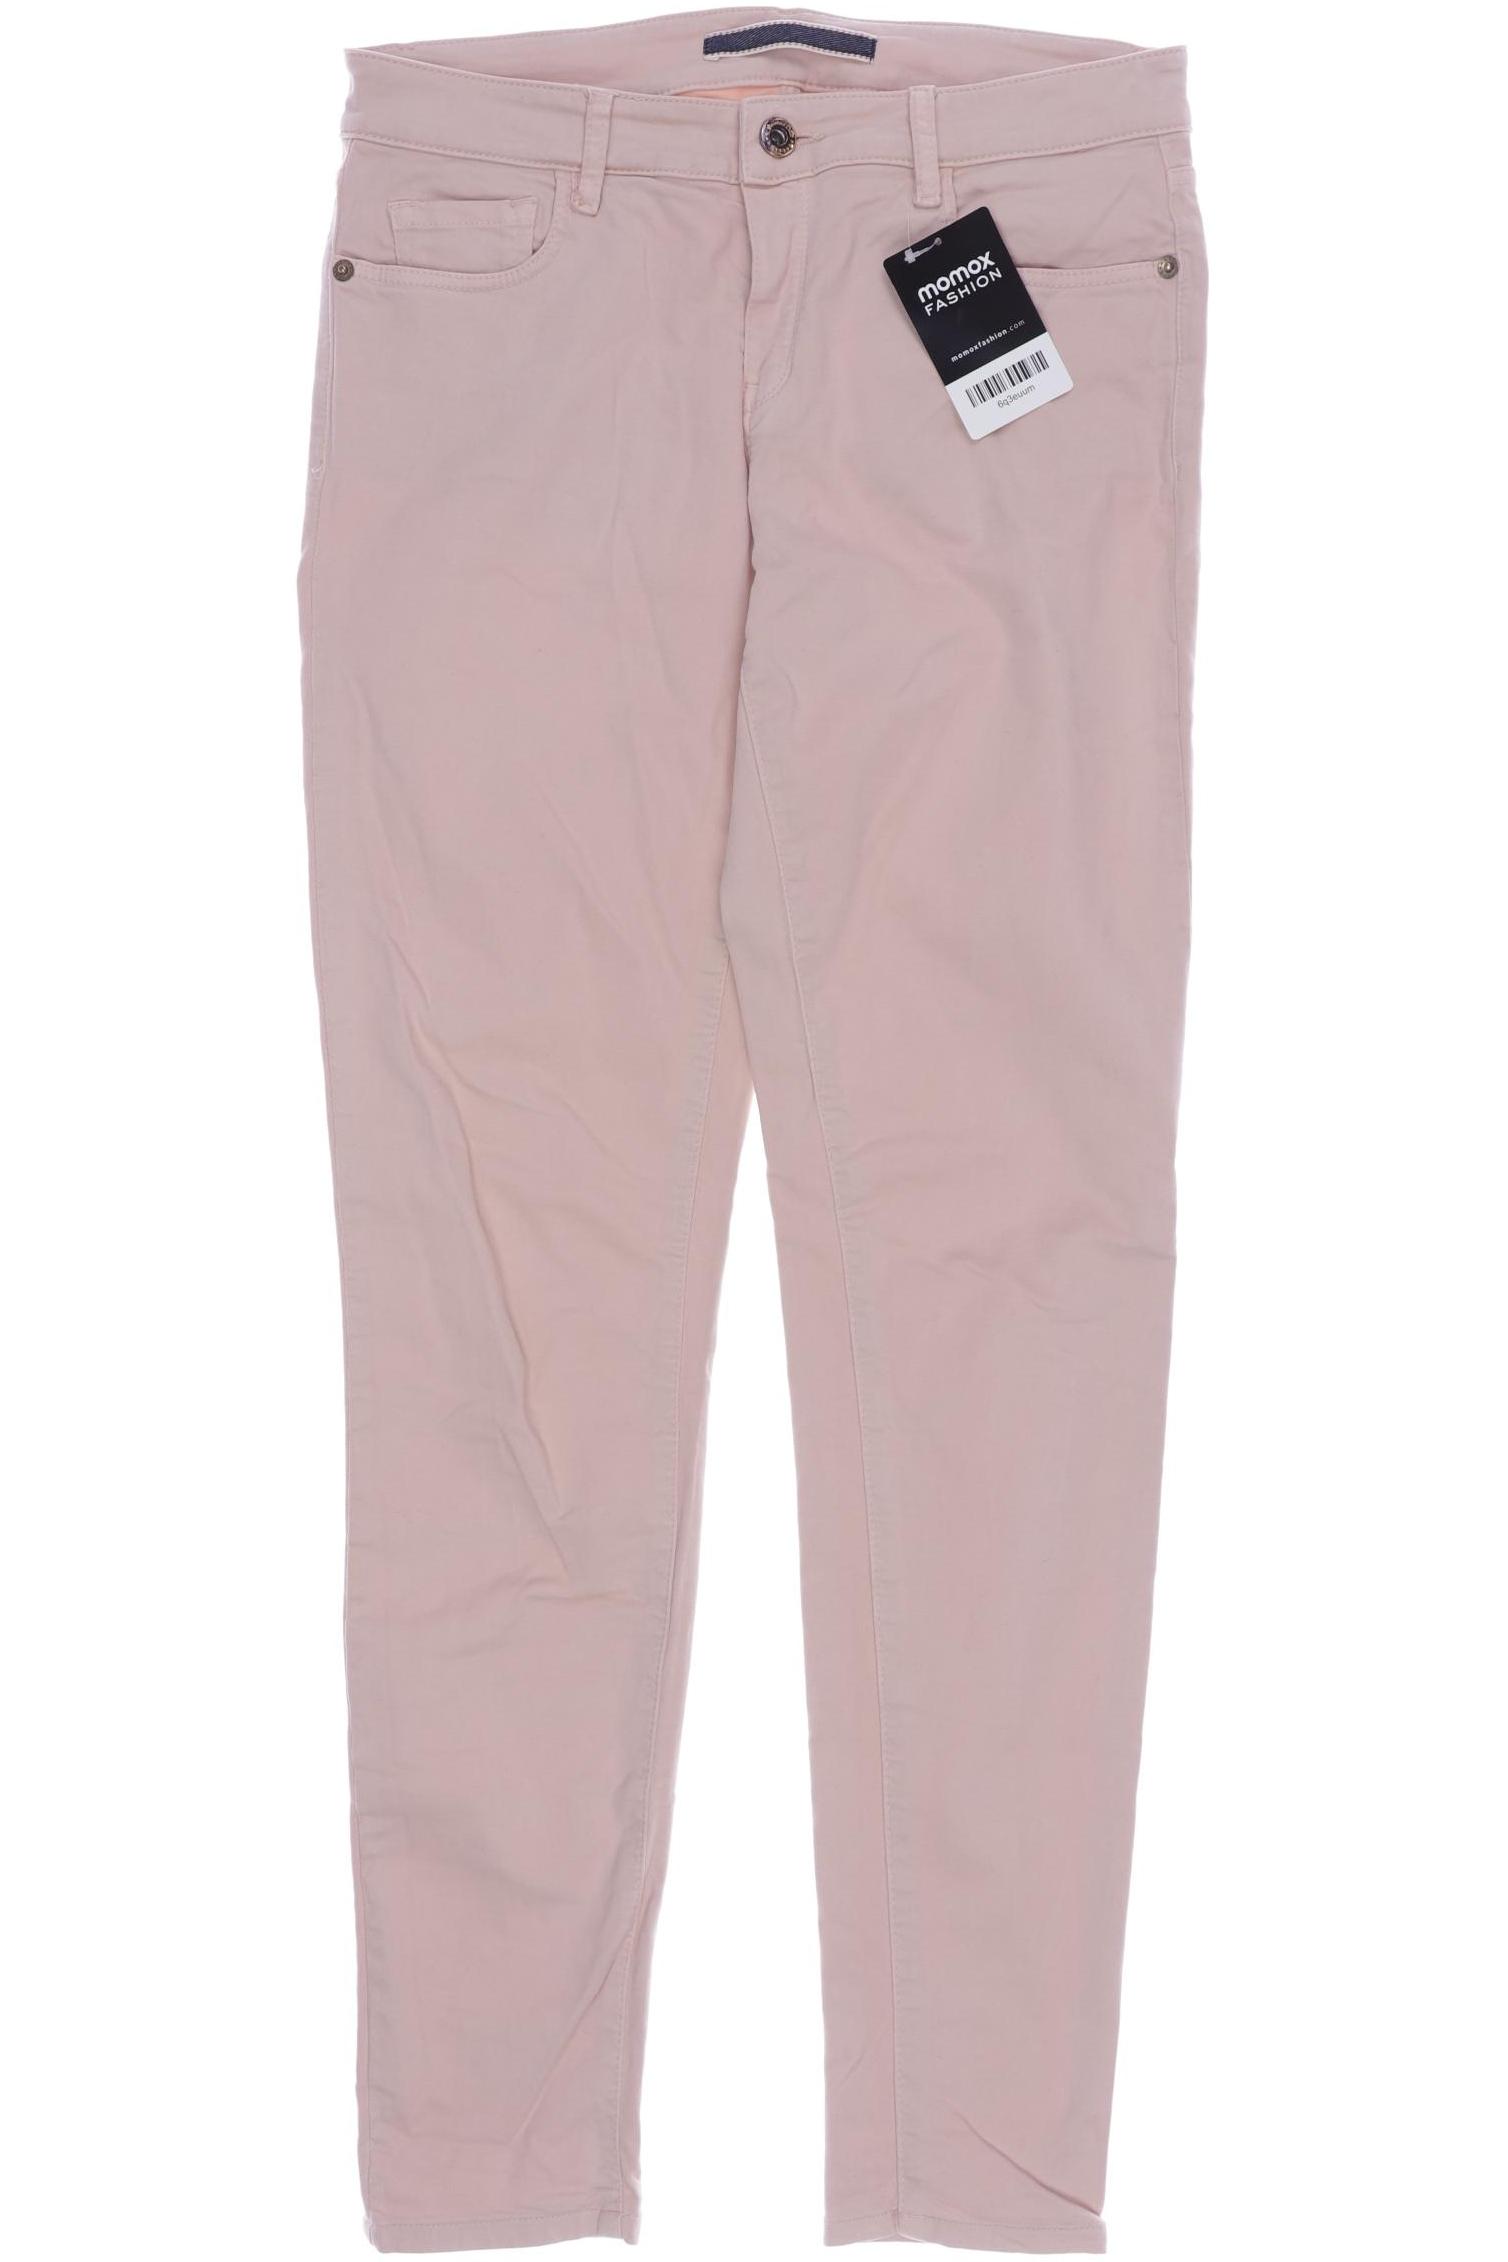 Massimo Dutti Damen Jeans, pink von Massimo Dutti